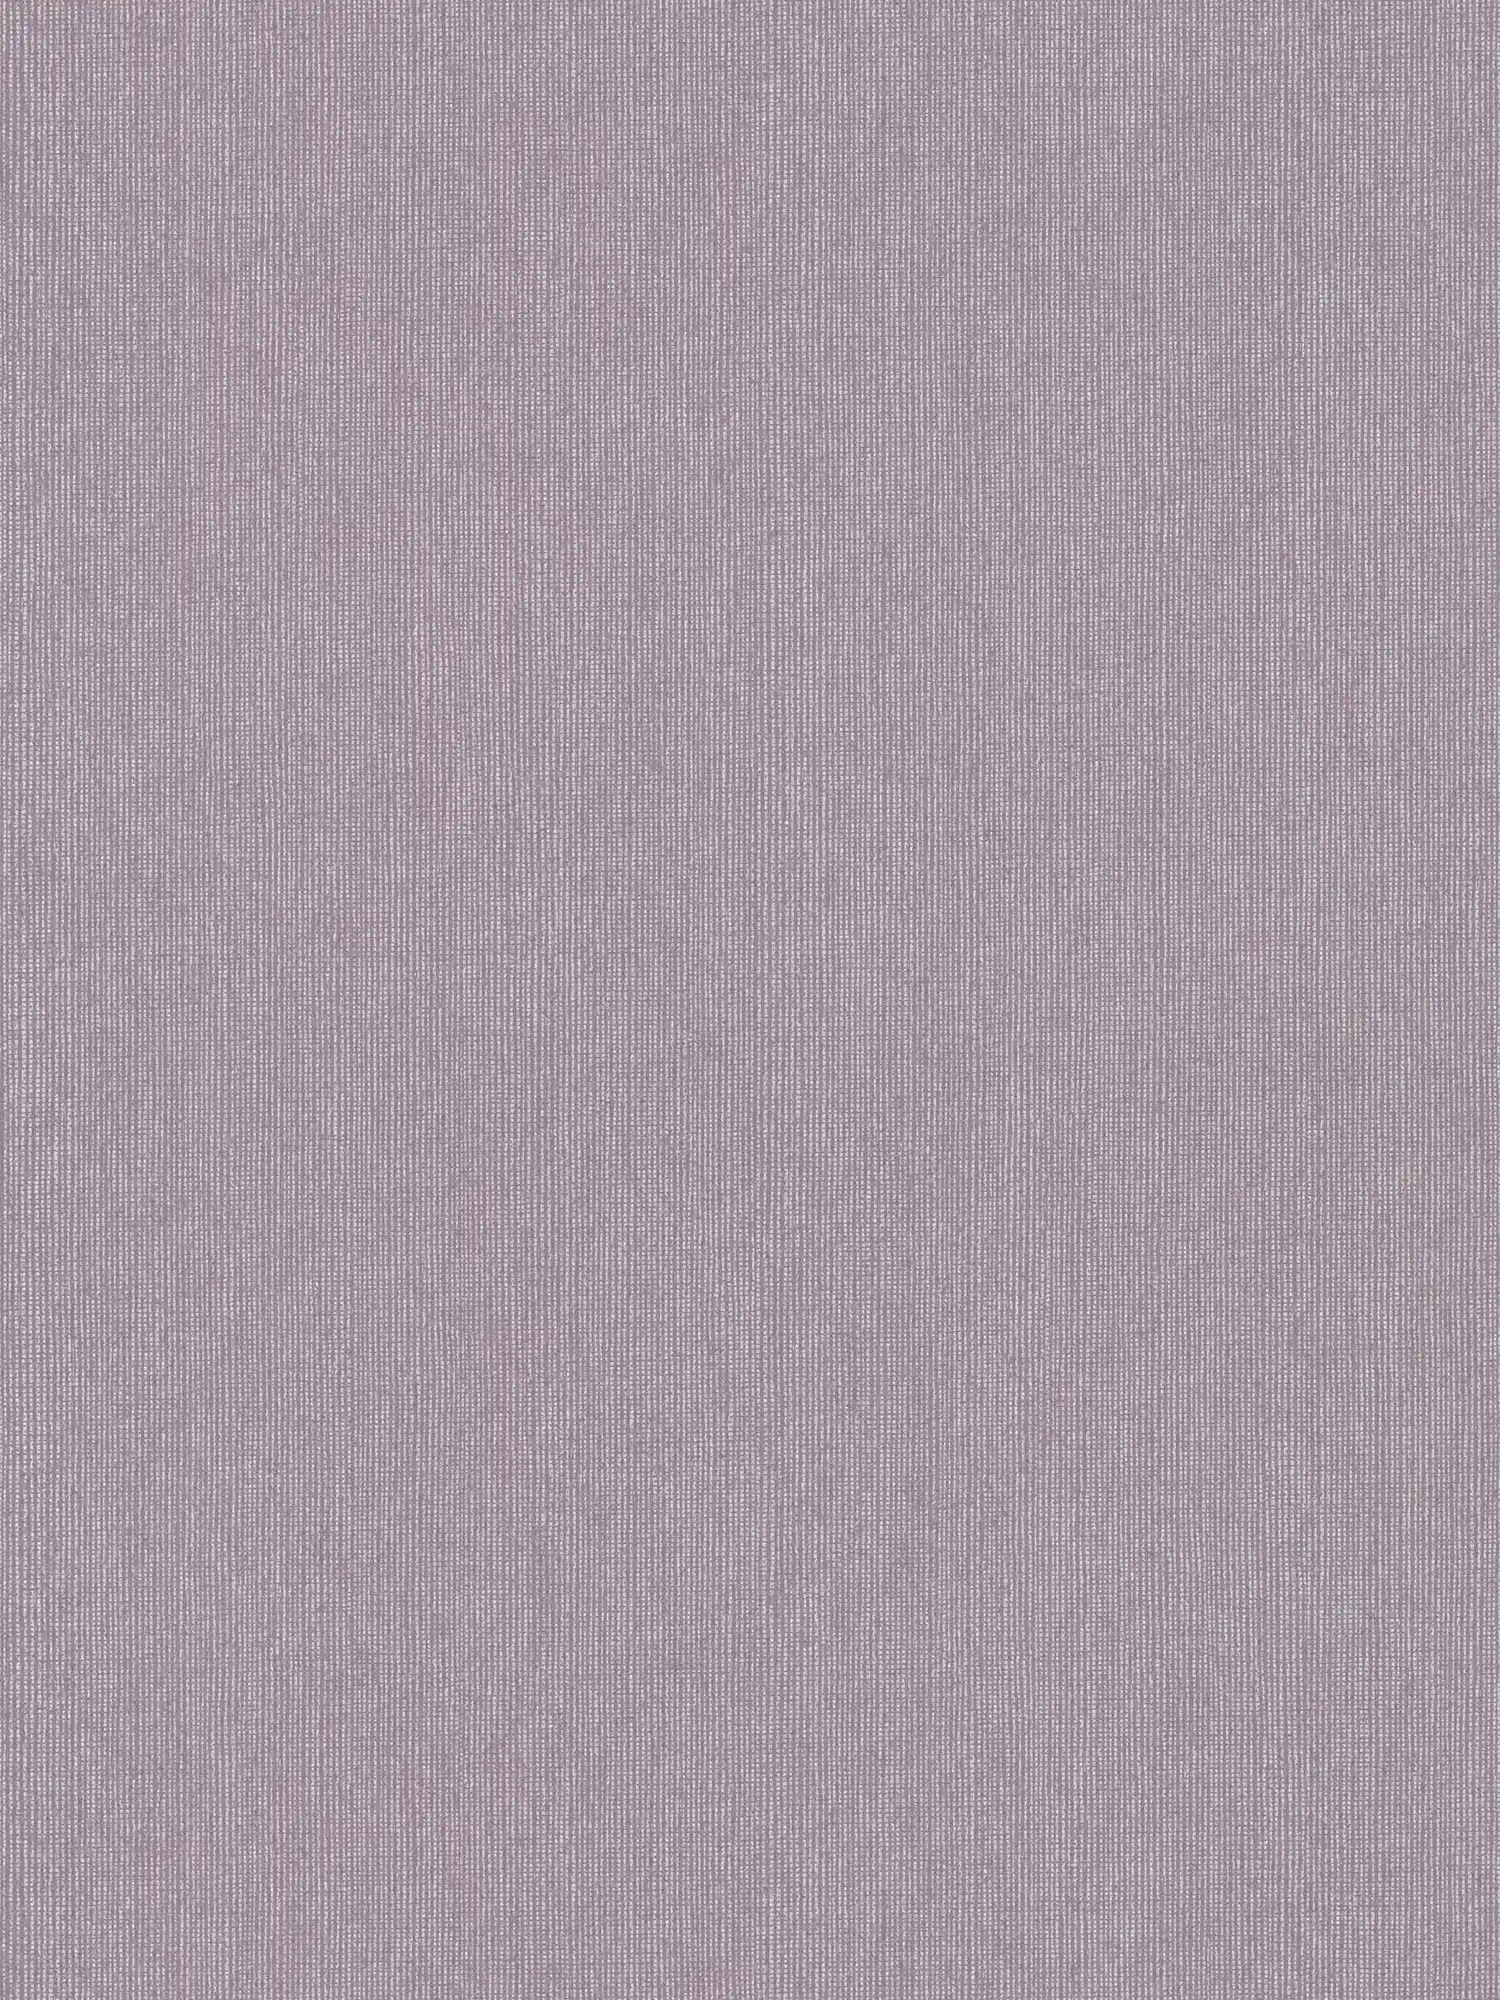 Carta da parati lucida con struttura tessile ed effetto shimmer - viola, grigio
